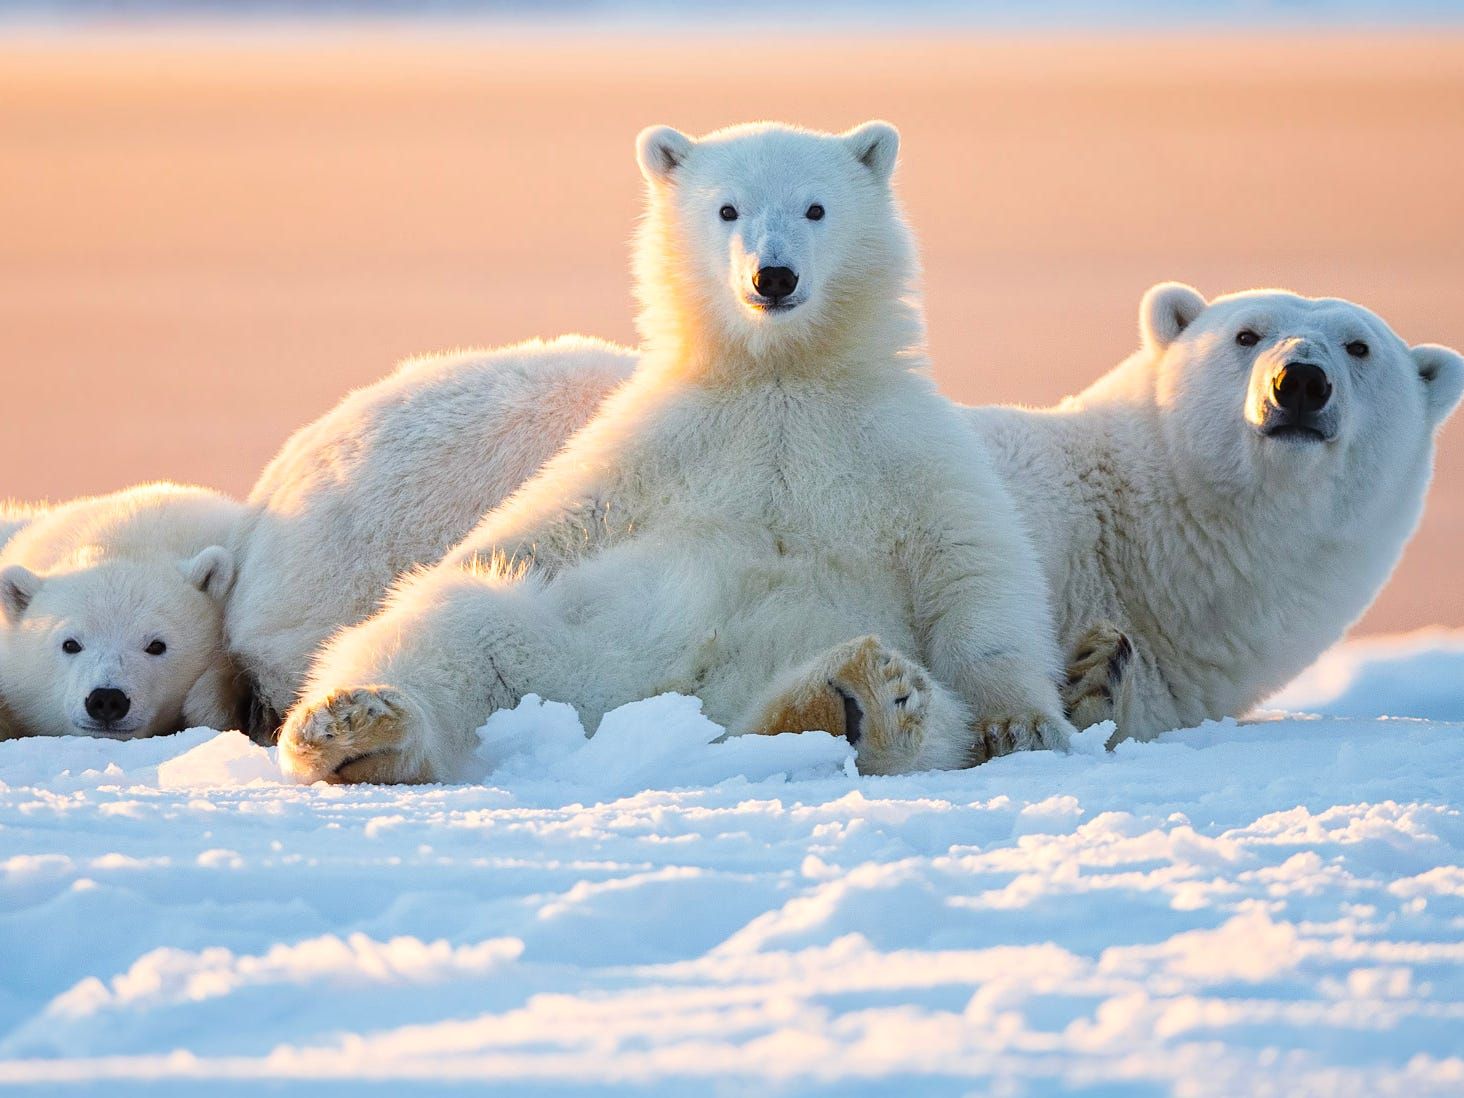 Gấu Bắc cực là một trong những loài động vật hoang dã kỳ lạ nhất trên trái đất. Hãy cùng nhìn ngắm hình ảnh của chúng để tìm hiểu thêm về cuộc sống được bao phủ bởi băng tuyết.